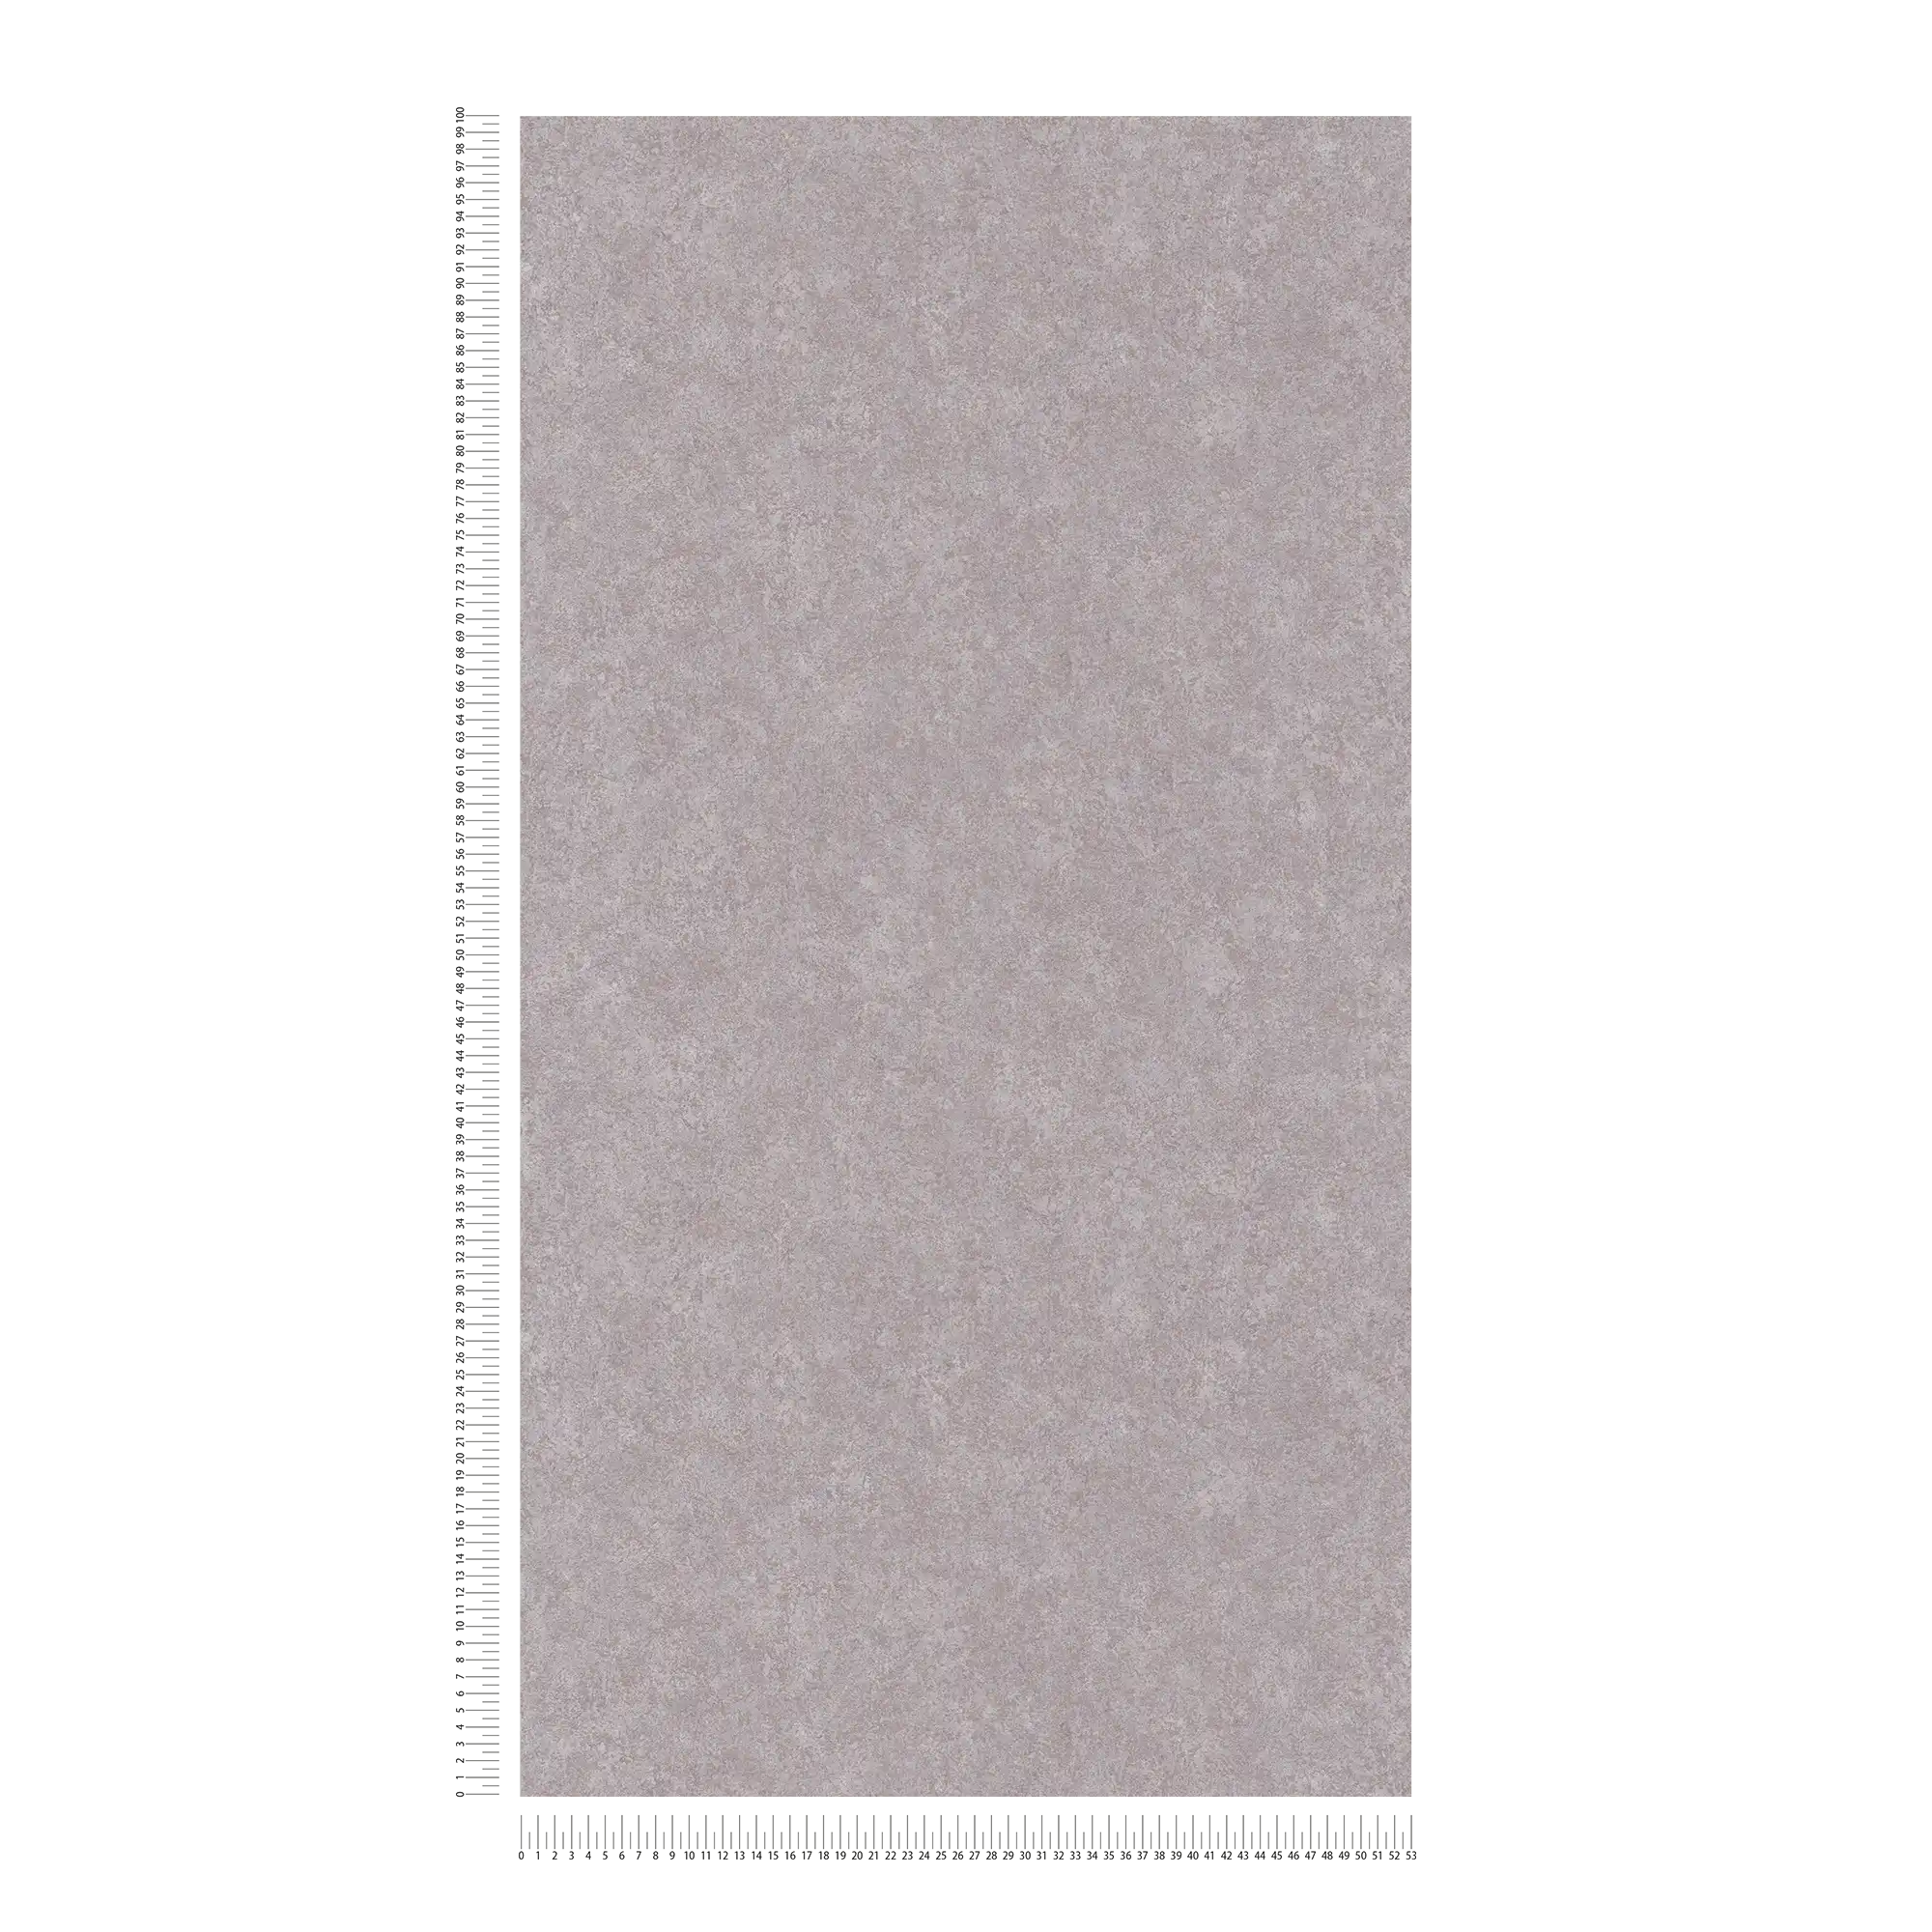             Neutrale Putzoptik Tapete mit matter Oberfläche – Grau
        